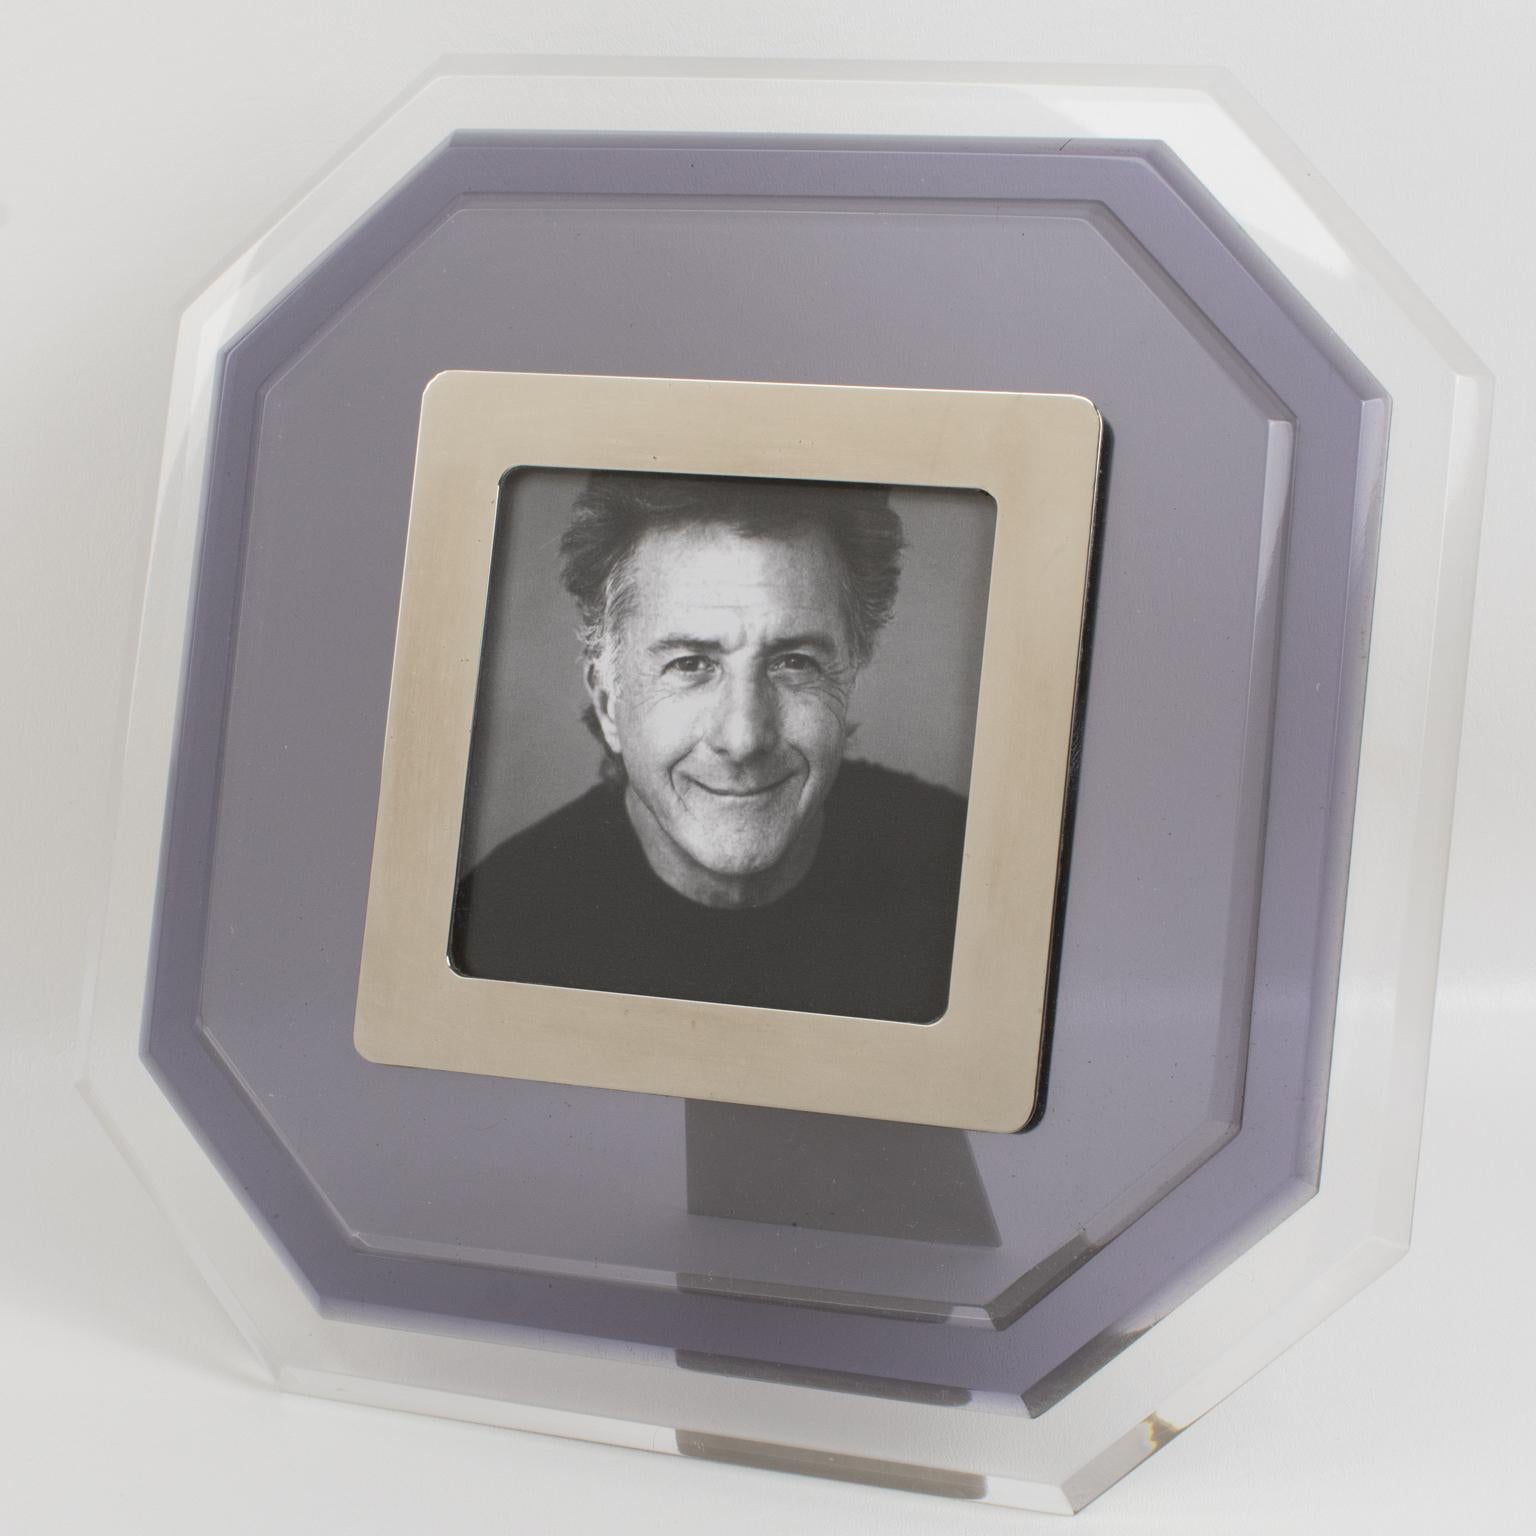 Ce magnifique cadre photo moderne en Lucite a été fabriqué en Italie dans les années 1980. Il présente une forme octogonale avec une construction multicouche en Lucite et une couleur transparente contrastée avec un ton bleu-gris fumé. L'image est